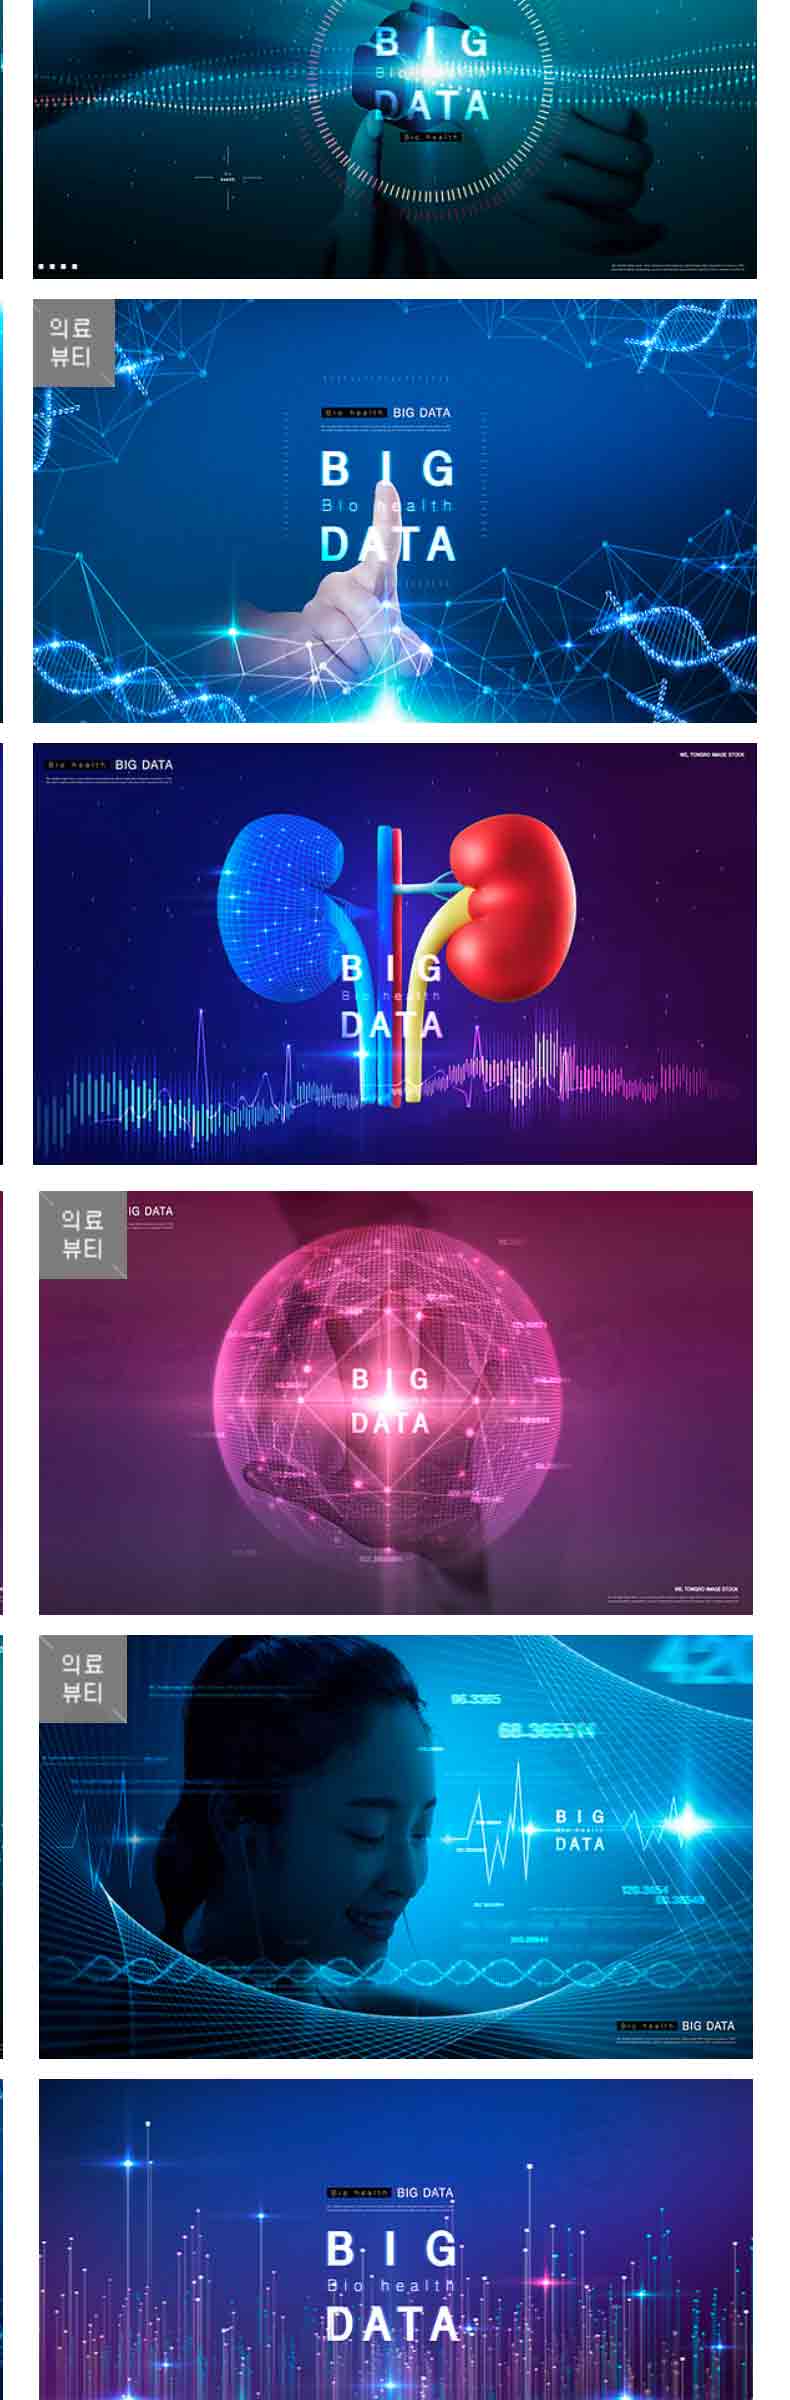 20套科技未来人工智能大数据智慧云计算医疗健康视觉海报psd素材-海报素材-到位啦UI